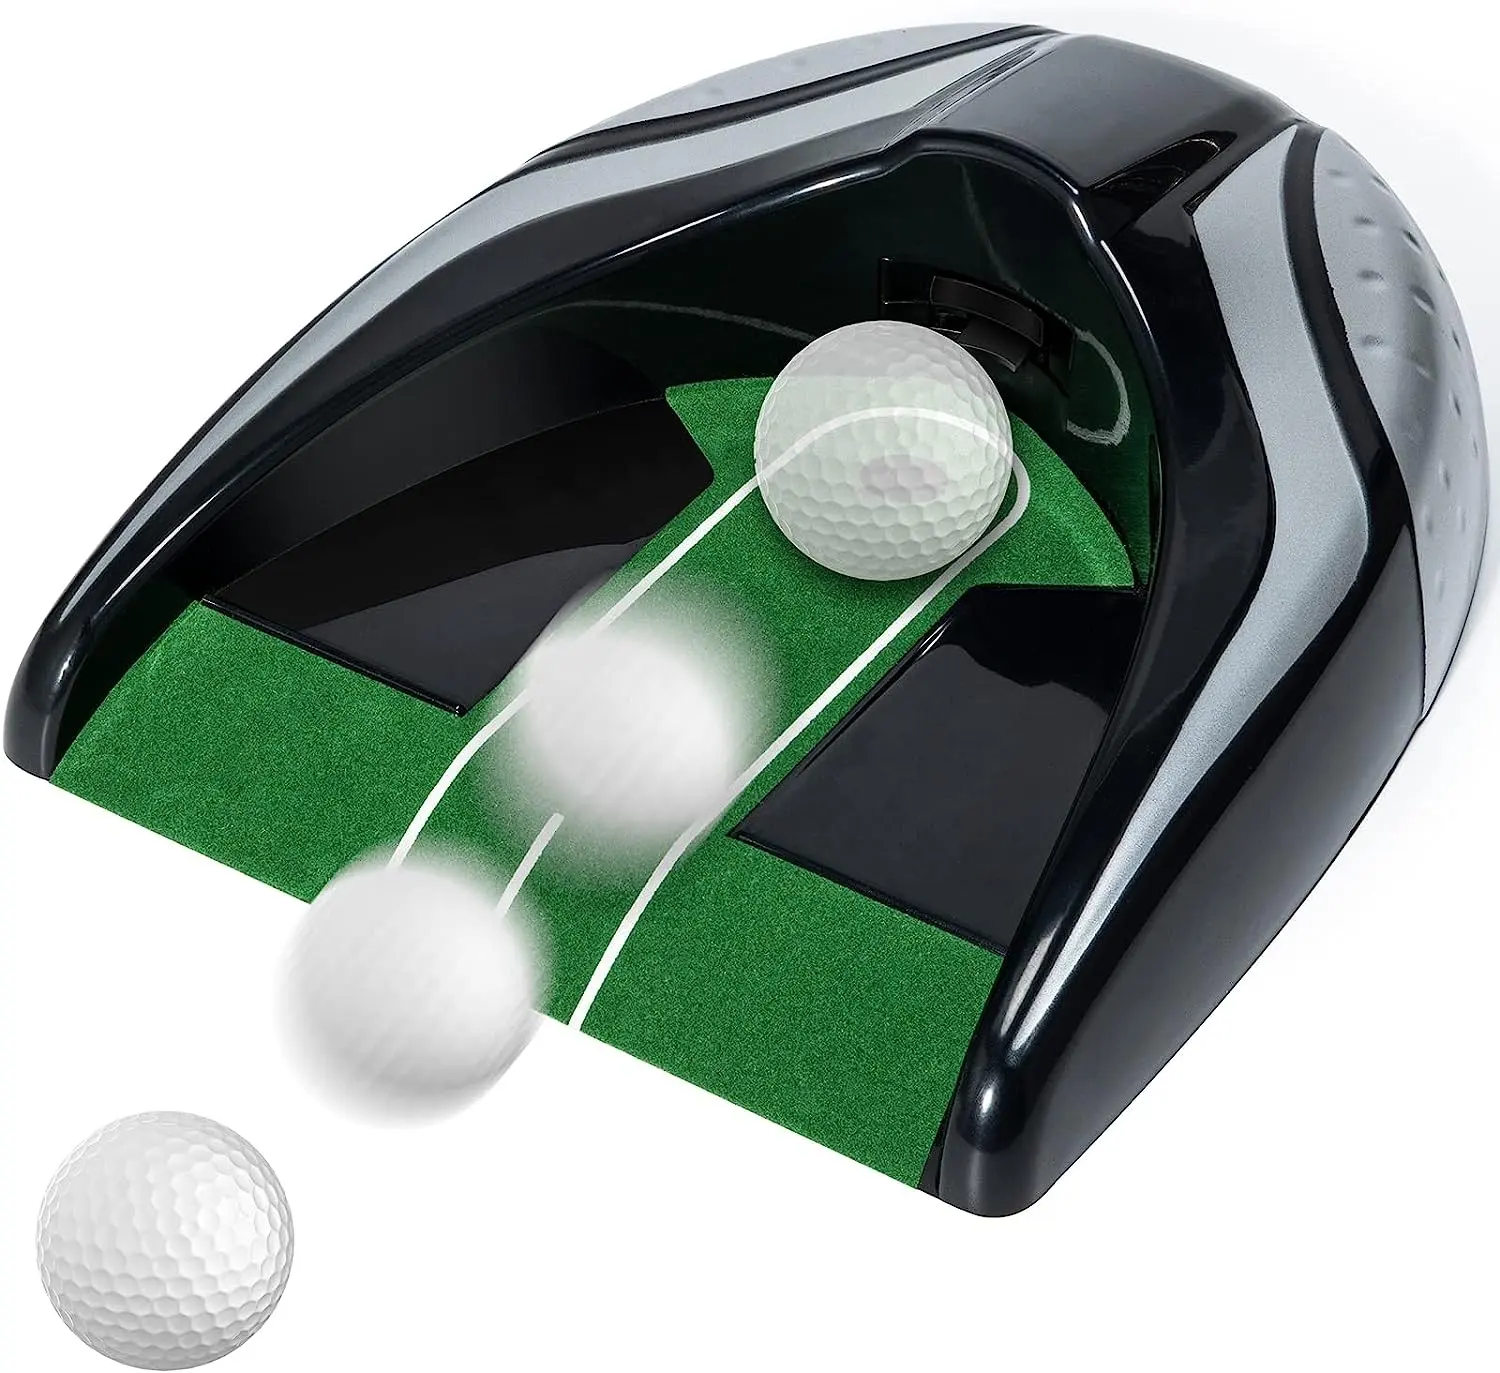 조정 가능한 중력 볼 리턴이있는 슈란 골프 자동 퍼팅 컵 실내 실외를위한 중단없는 연습